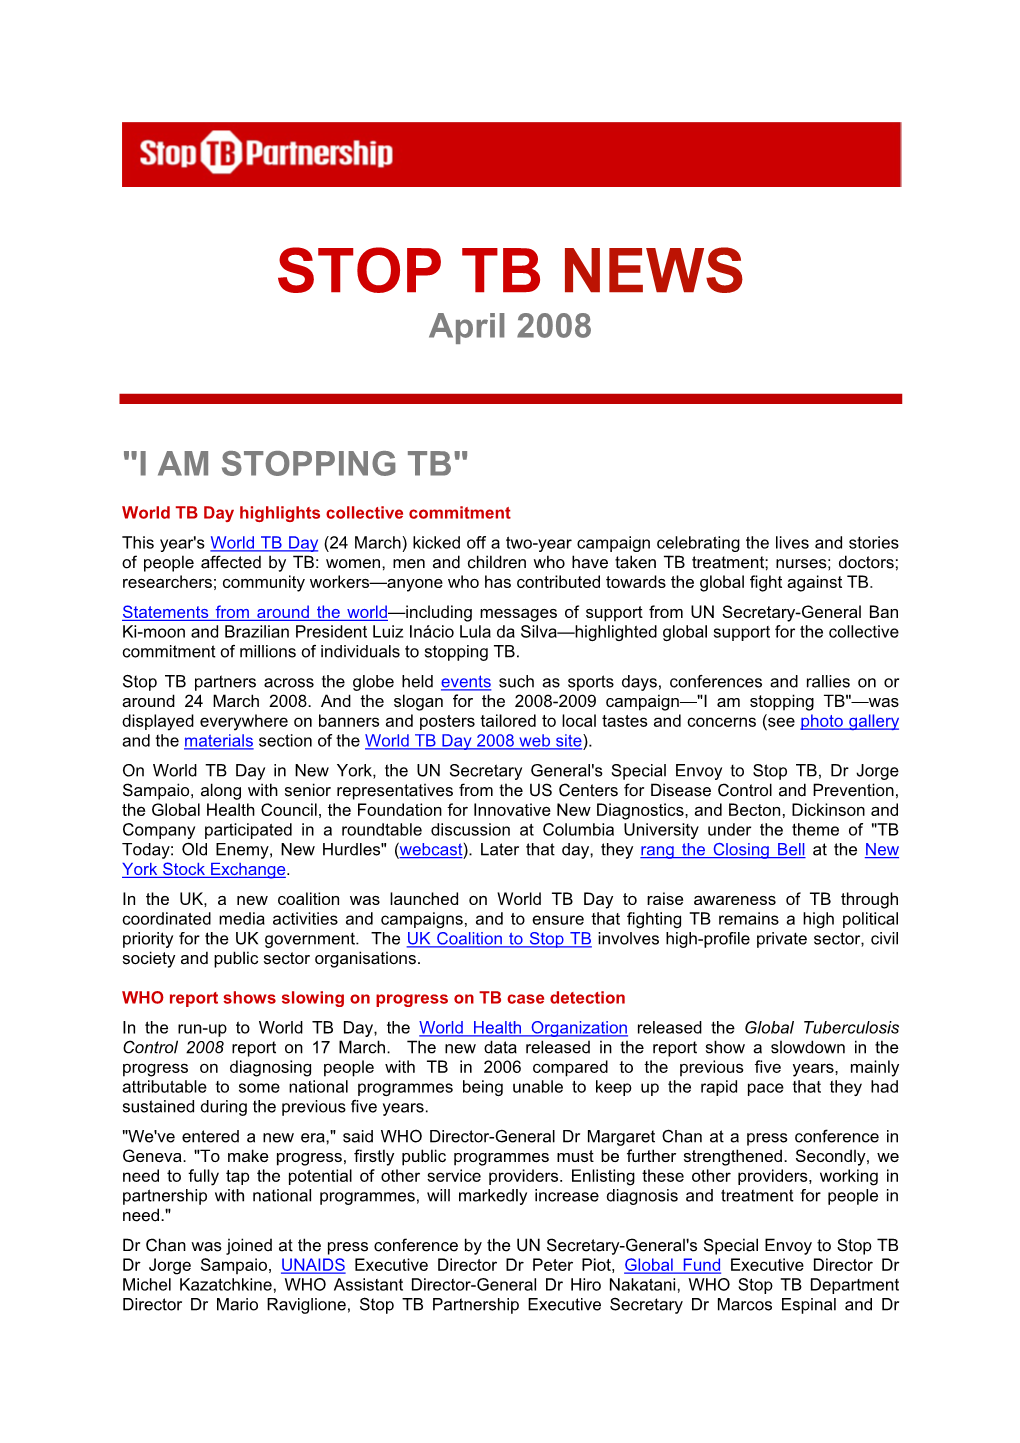 STOP TB NEWS April 2008